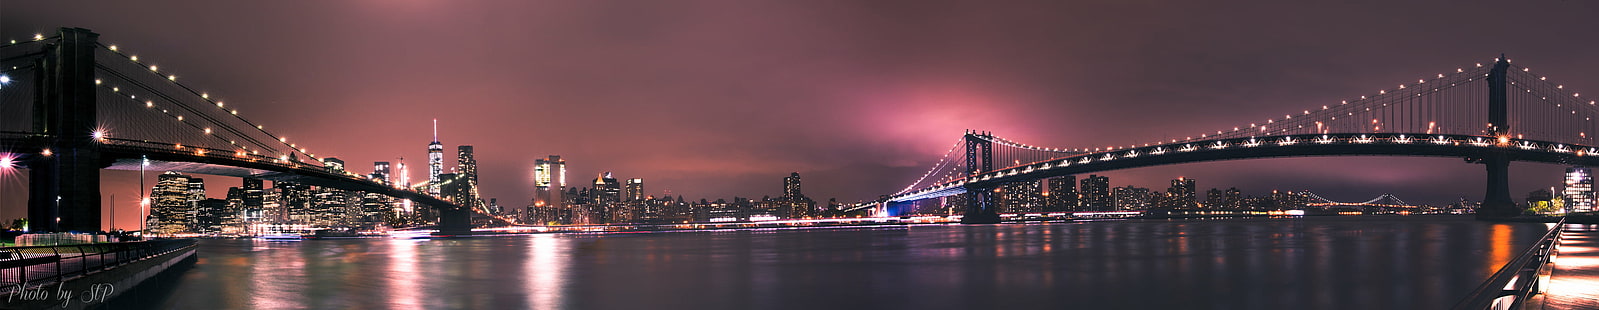 панорамное фото города ночью, йорк, йорк, нью-йорк, мосты, панорамное фото, город, ночью, бруклинский мост, манхэттенский мост, Pentax K-3, длительная выдержка, nuit, панорама, pont, вода, Гудзон, Ист-Ривер, речной свет, сигма, ночь, городской пейзаж, нью-йорк, мост - искусственная структура, городской горизонт, сша, известное место, манхэттен - нью-йорк, река, архитектура, бруклин - нью-йорк, городская сцена, освещенная, сумерки,центр города, HD обои HD wallpaper